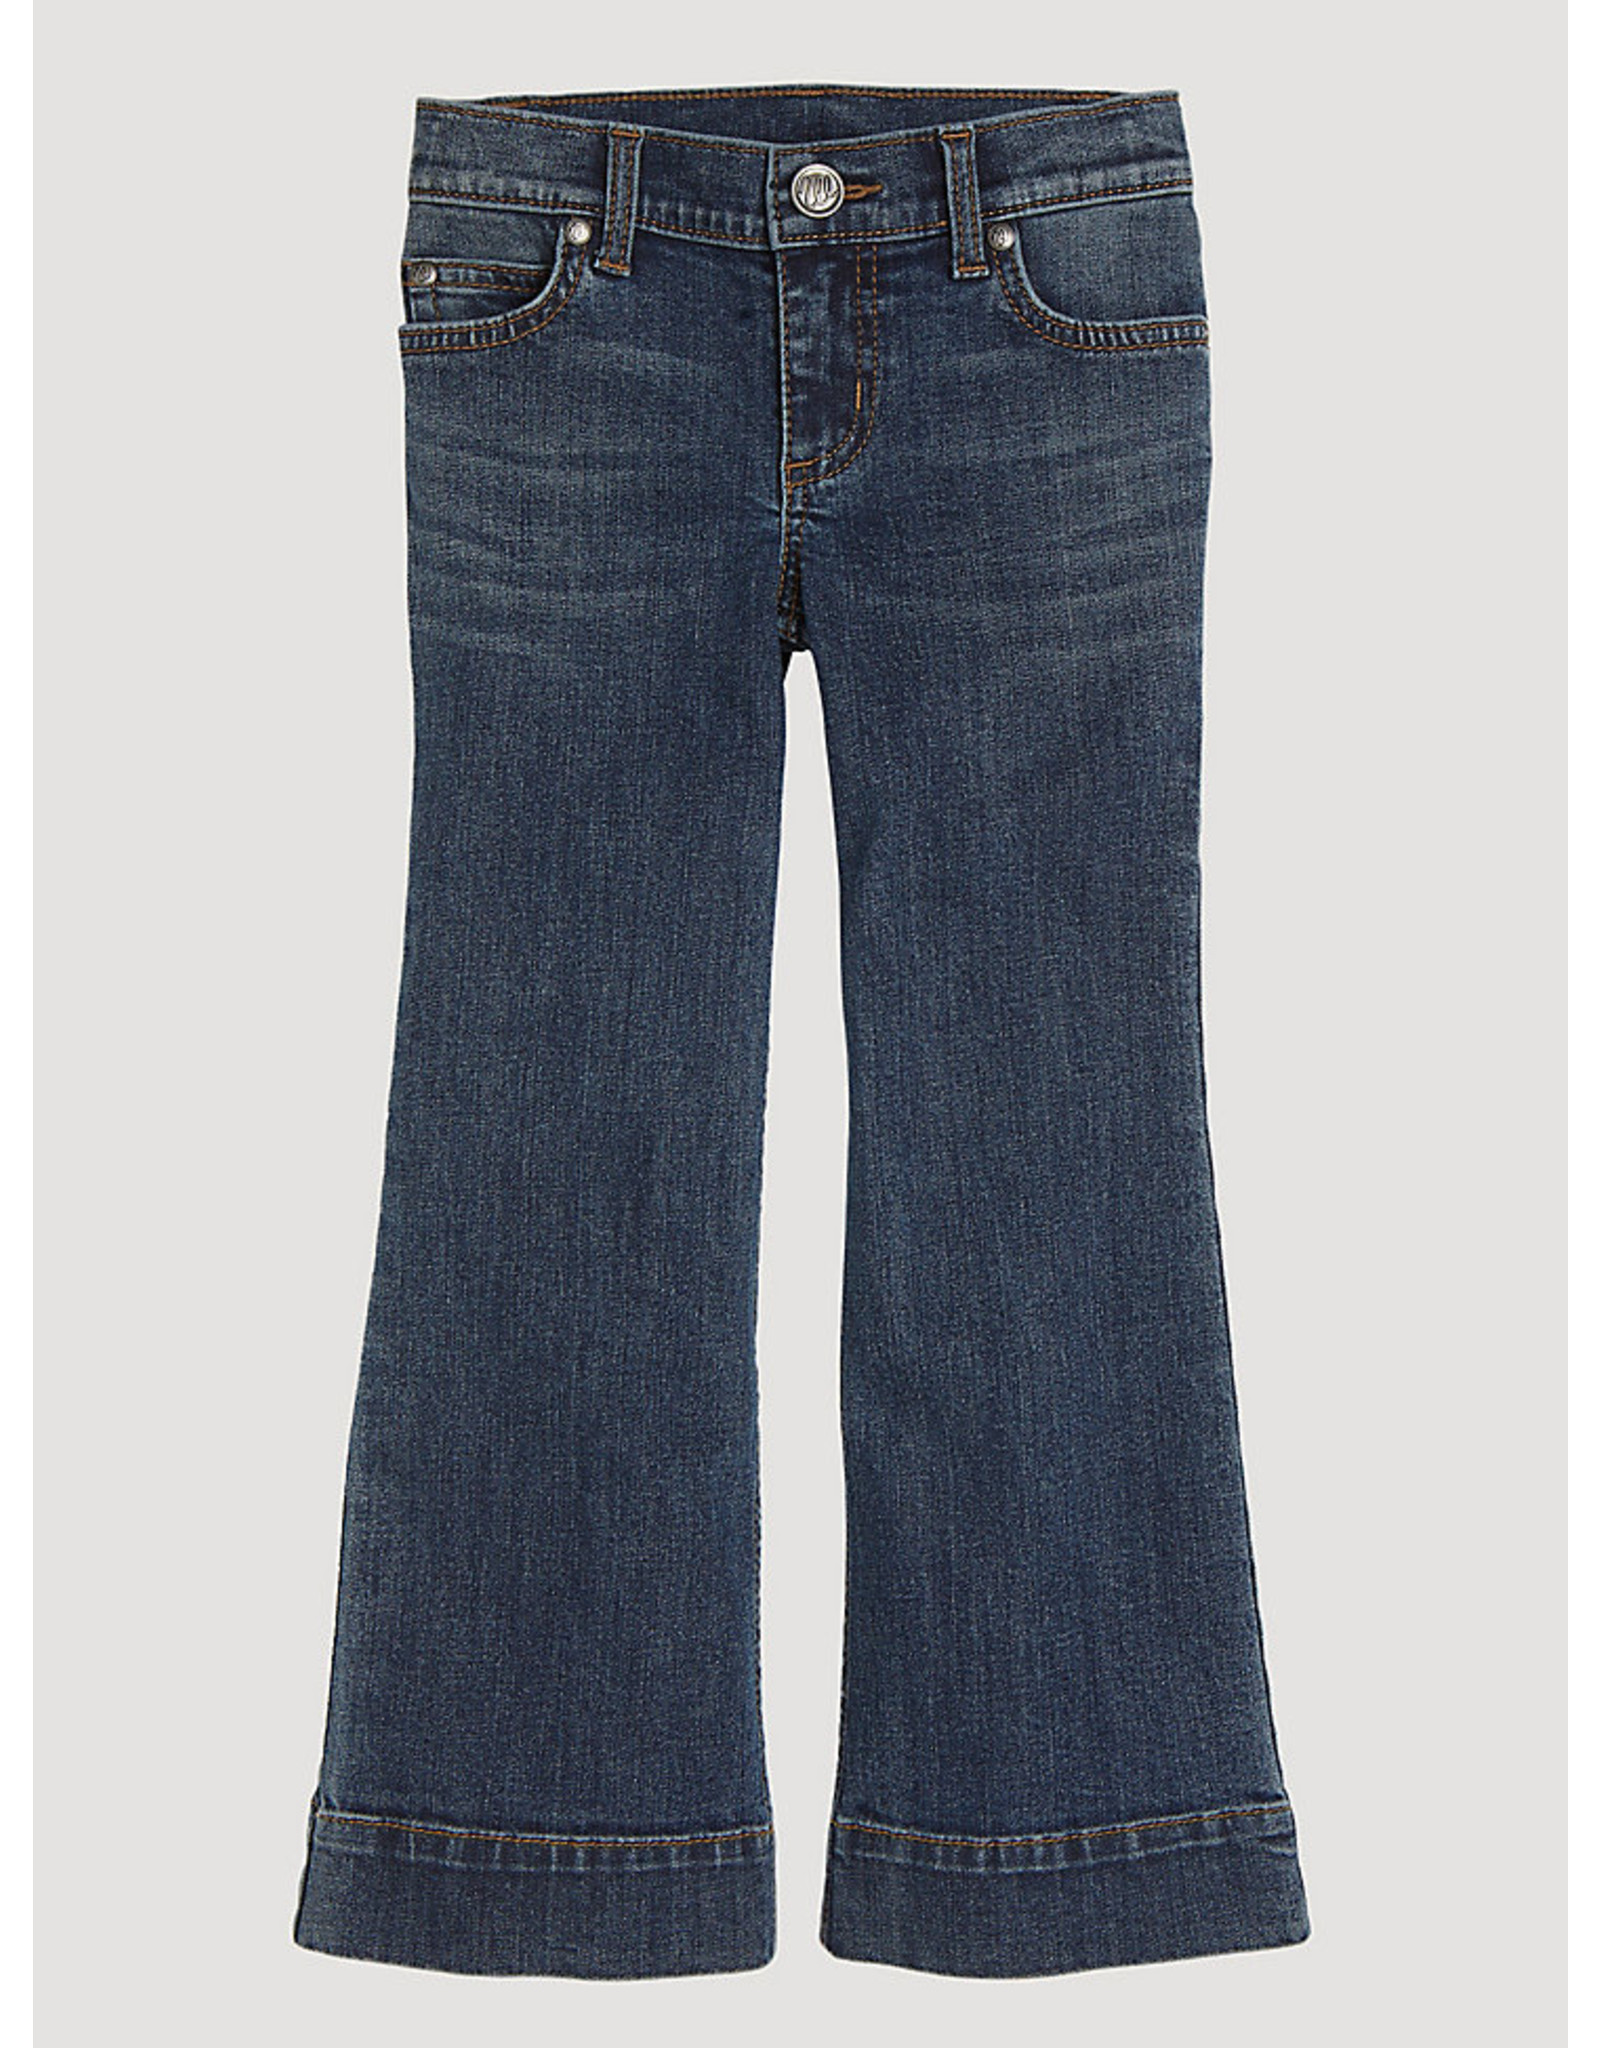 Jeans-Children WRANGLER 09GWW Wide Leg Trouser Girls